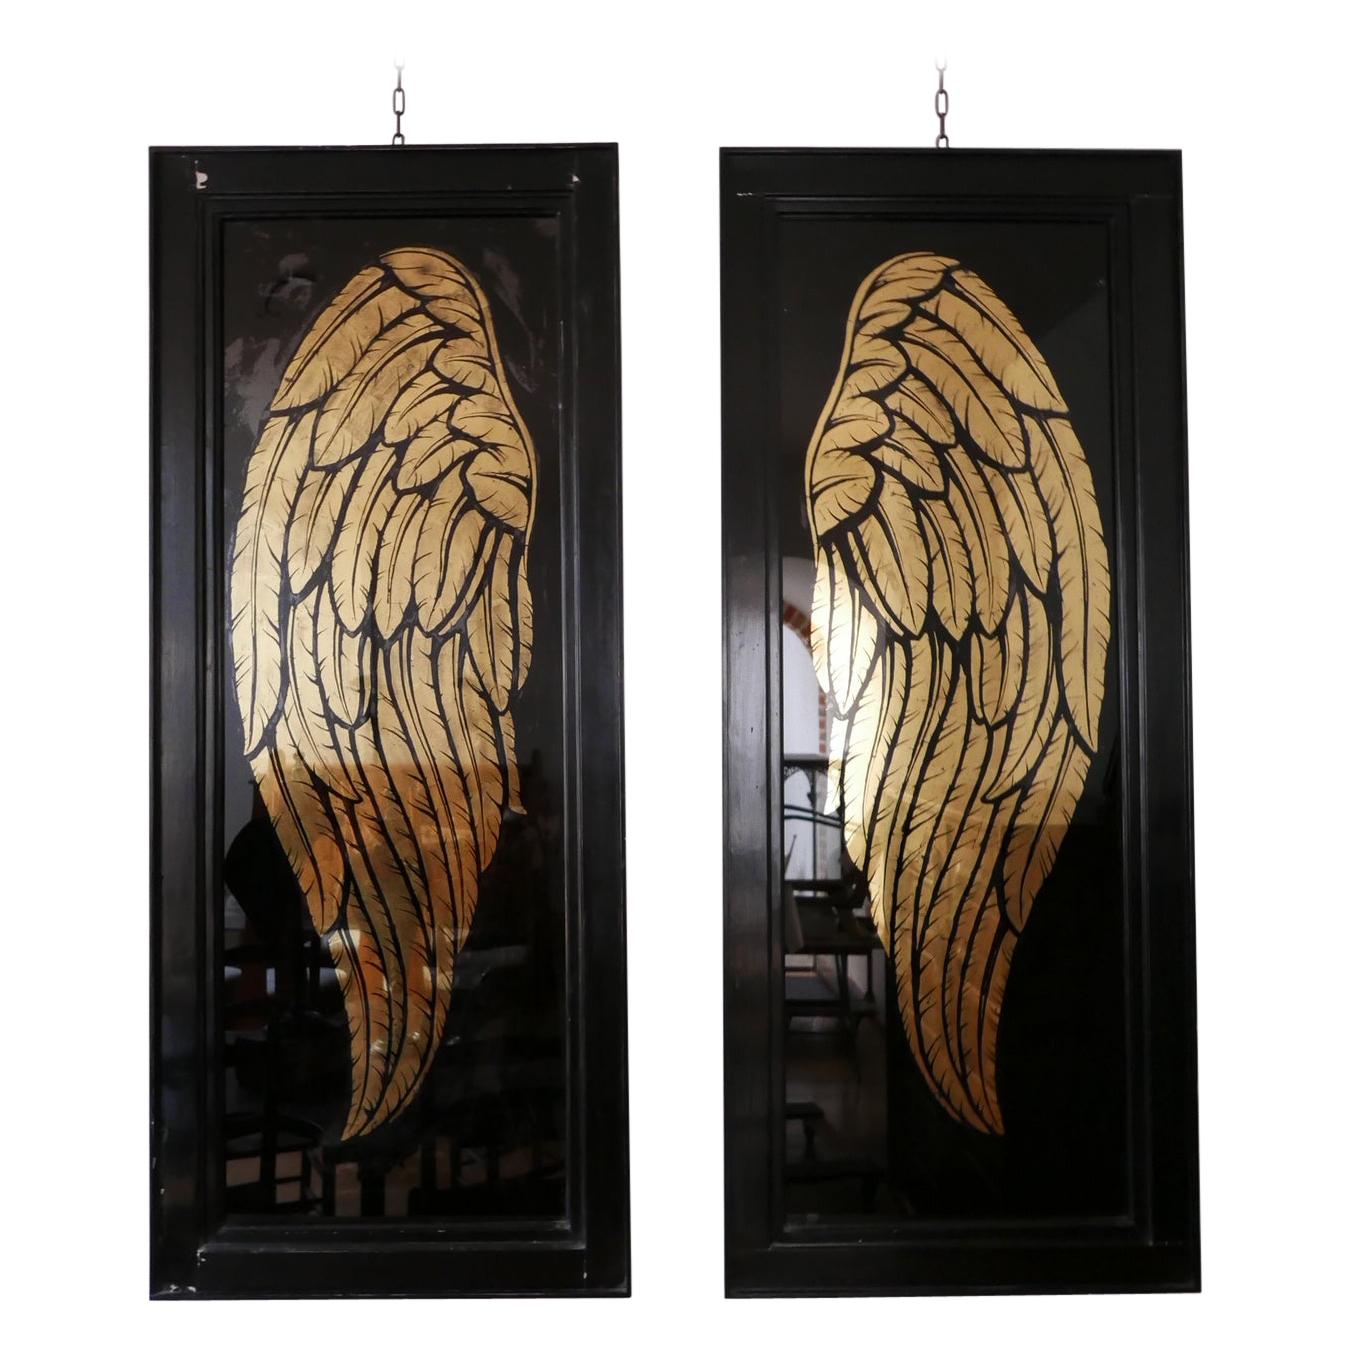 Pair of Large Angel Wings Framed Artwork